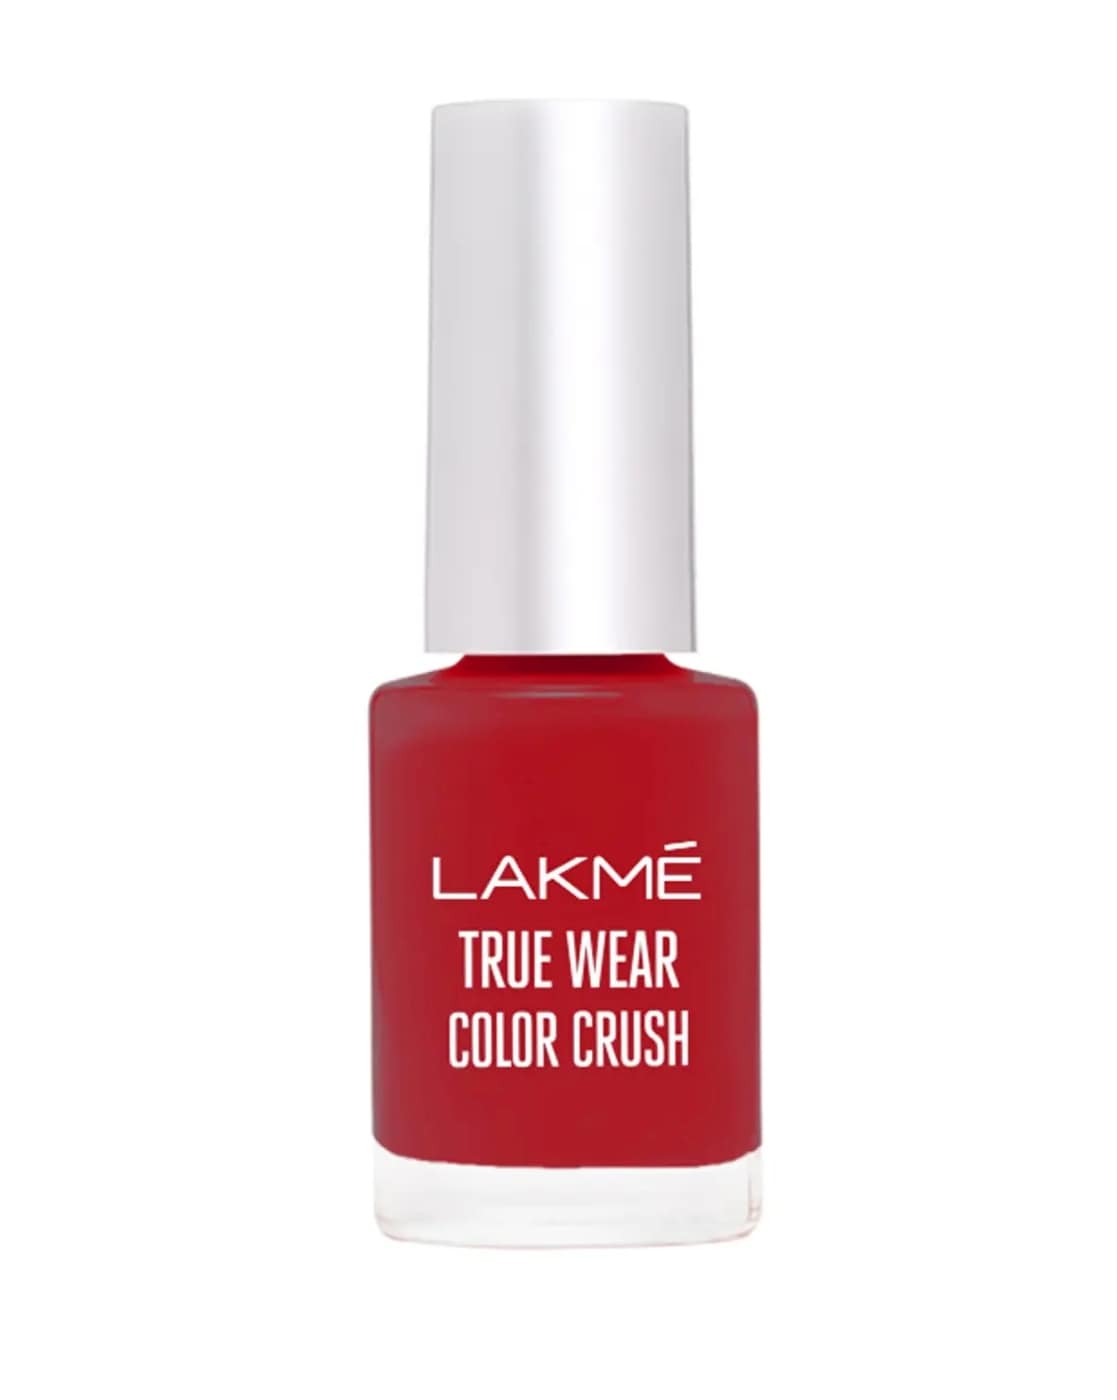 Lakme nail polish shades - Lakme 9 to 5 nail polish swatches - #shorts | Nail  polish, Swatch, Nails